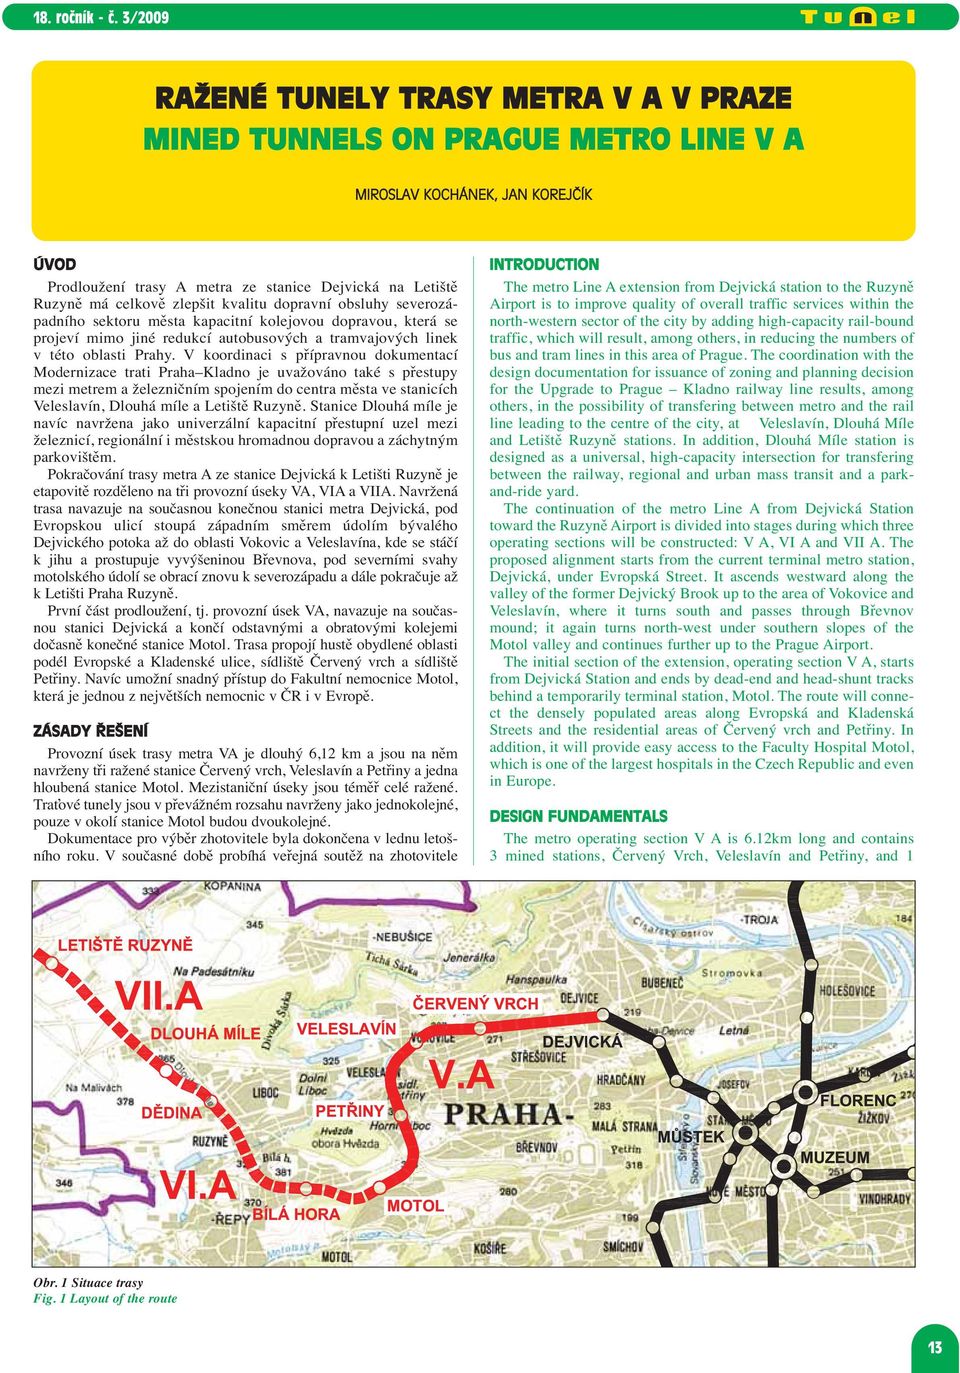 V koordinaci s přípravnou dokumentací Modernizace trati Pra ha Kladno je uvažováno také s přestupy mezi metrem a železničním spojením do centra města ve stanicích Veleslavín, Dlouhá míle a Letiště